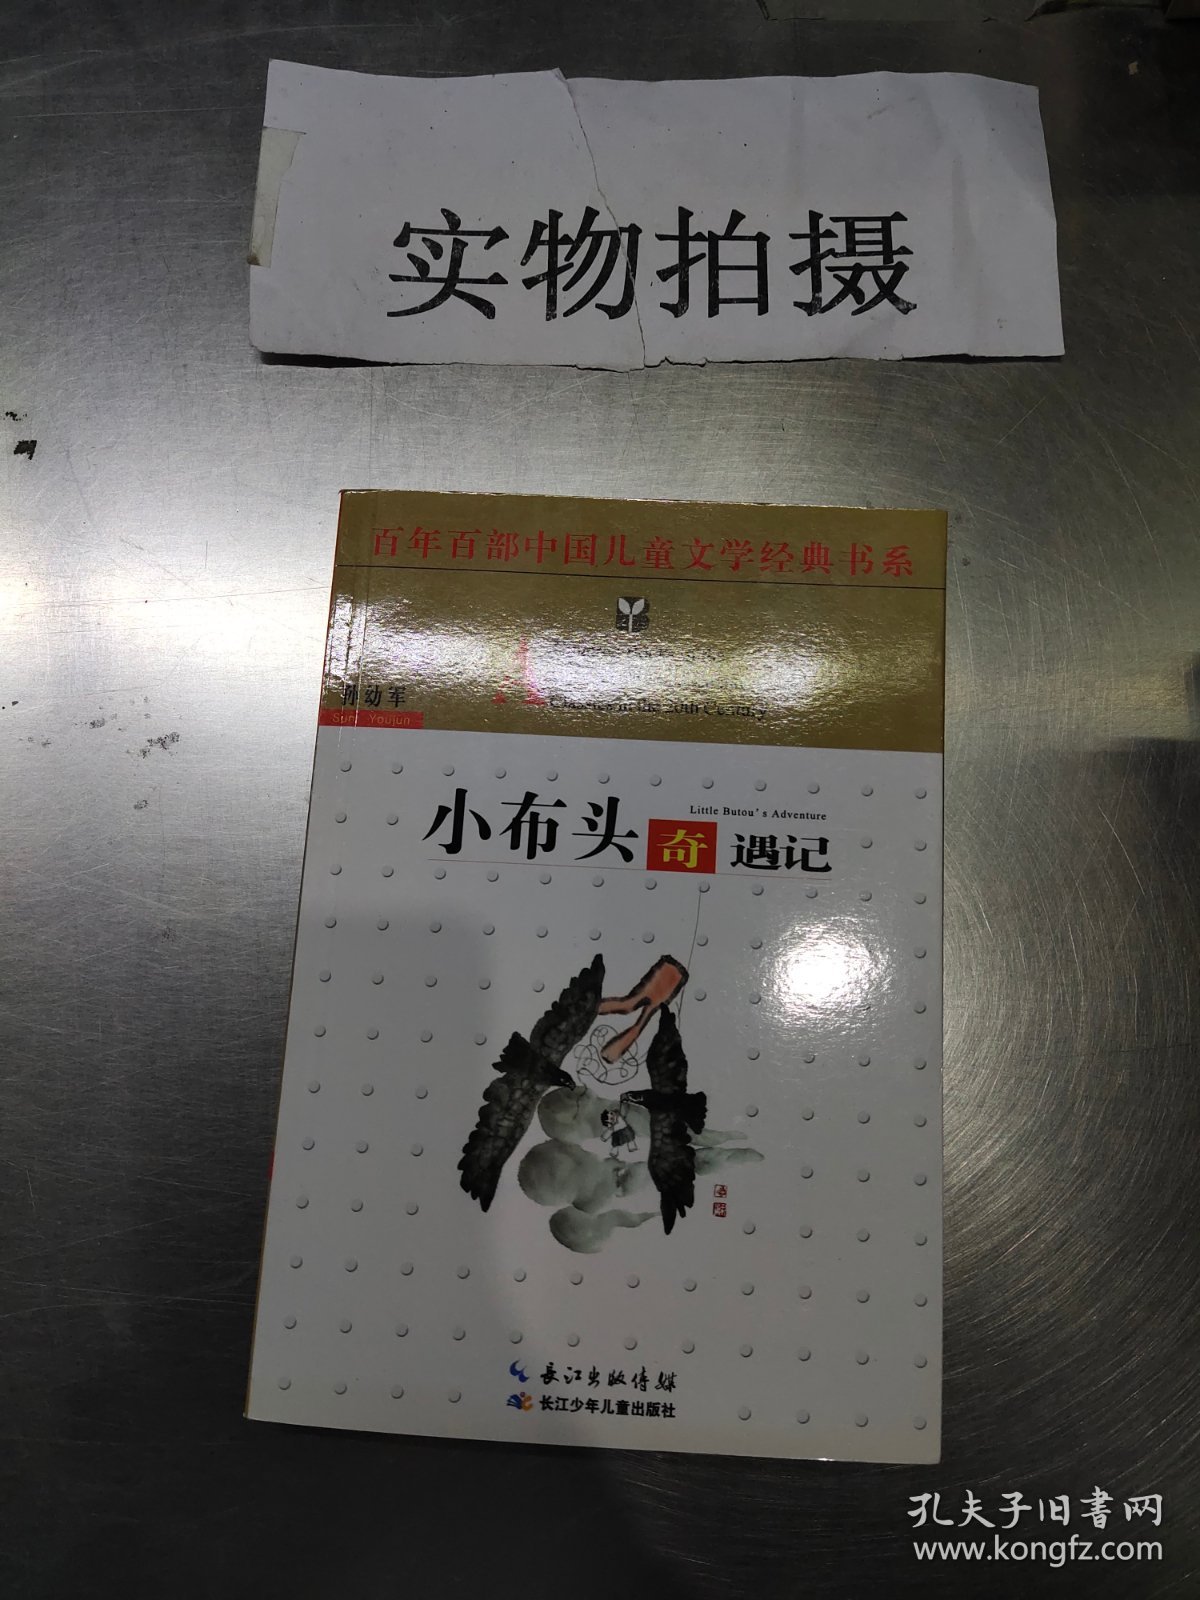 最能打动孩子心灵的中国经典童话·小布头奇遇记 (Chinese Edition) by 孙幼军 | Goodreads